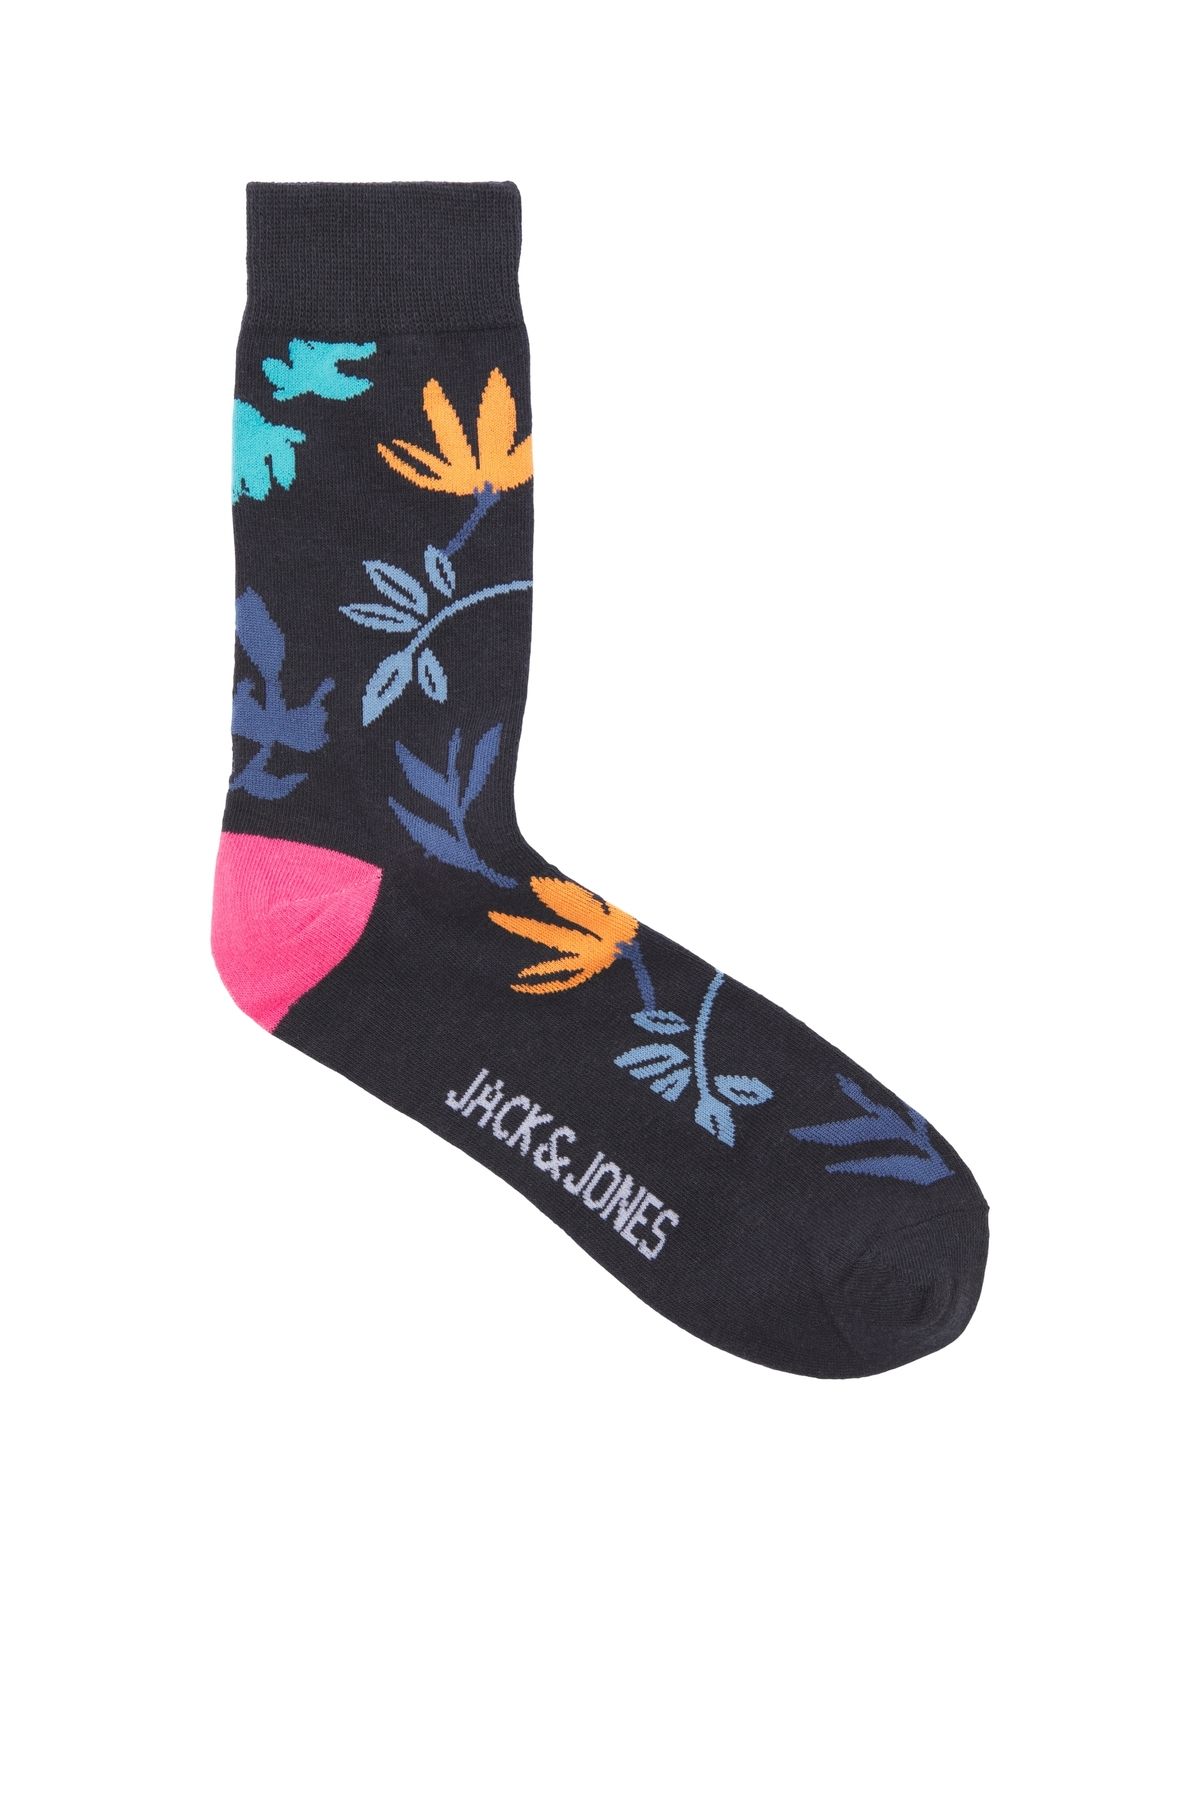 Jack & Jones Jack Jones Jacreece Short Sock Erkek Antrasit Çorap 12252684-16